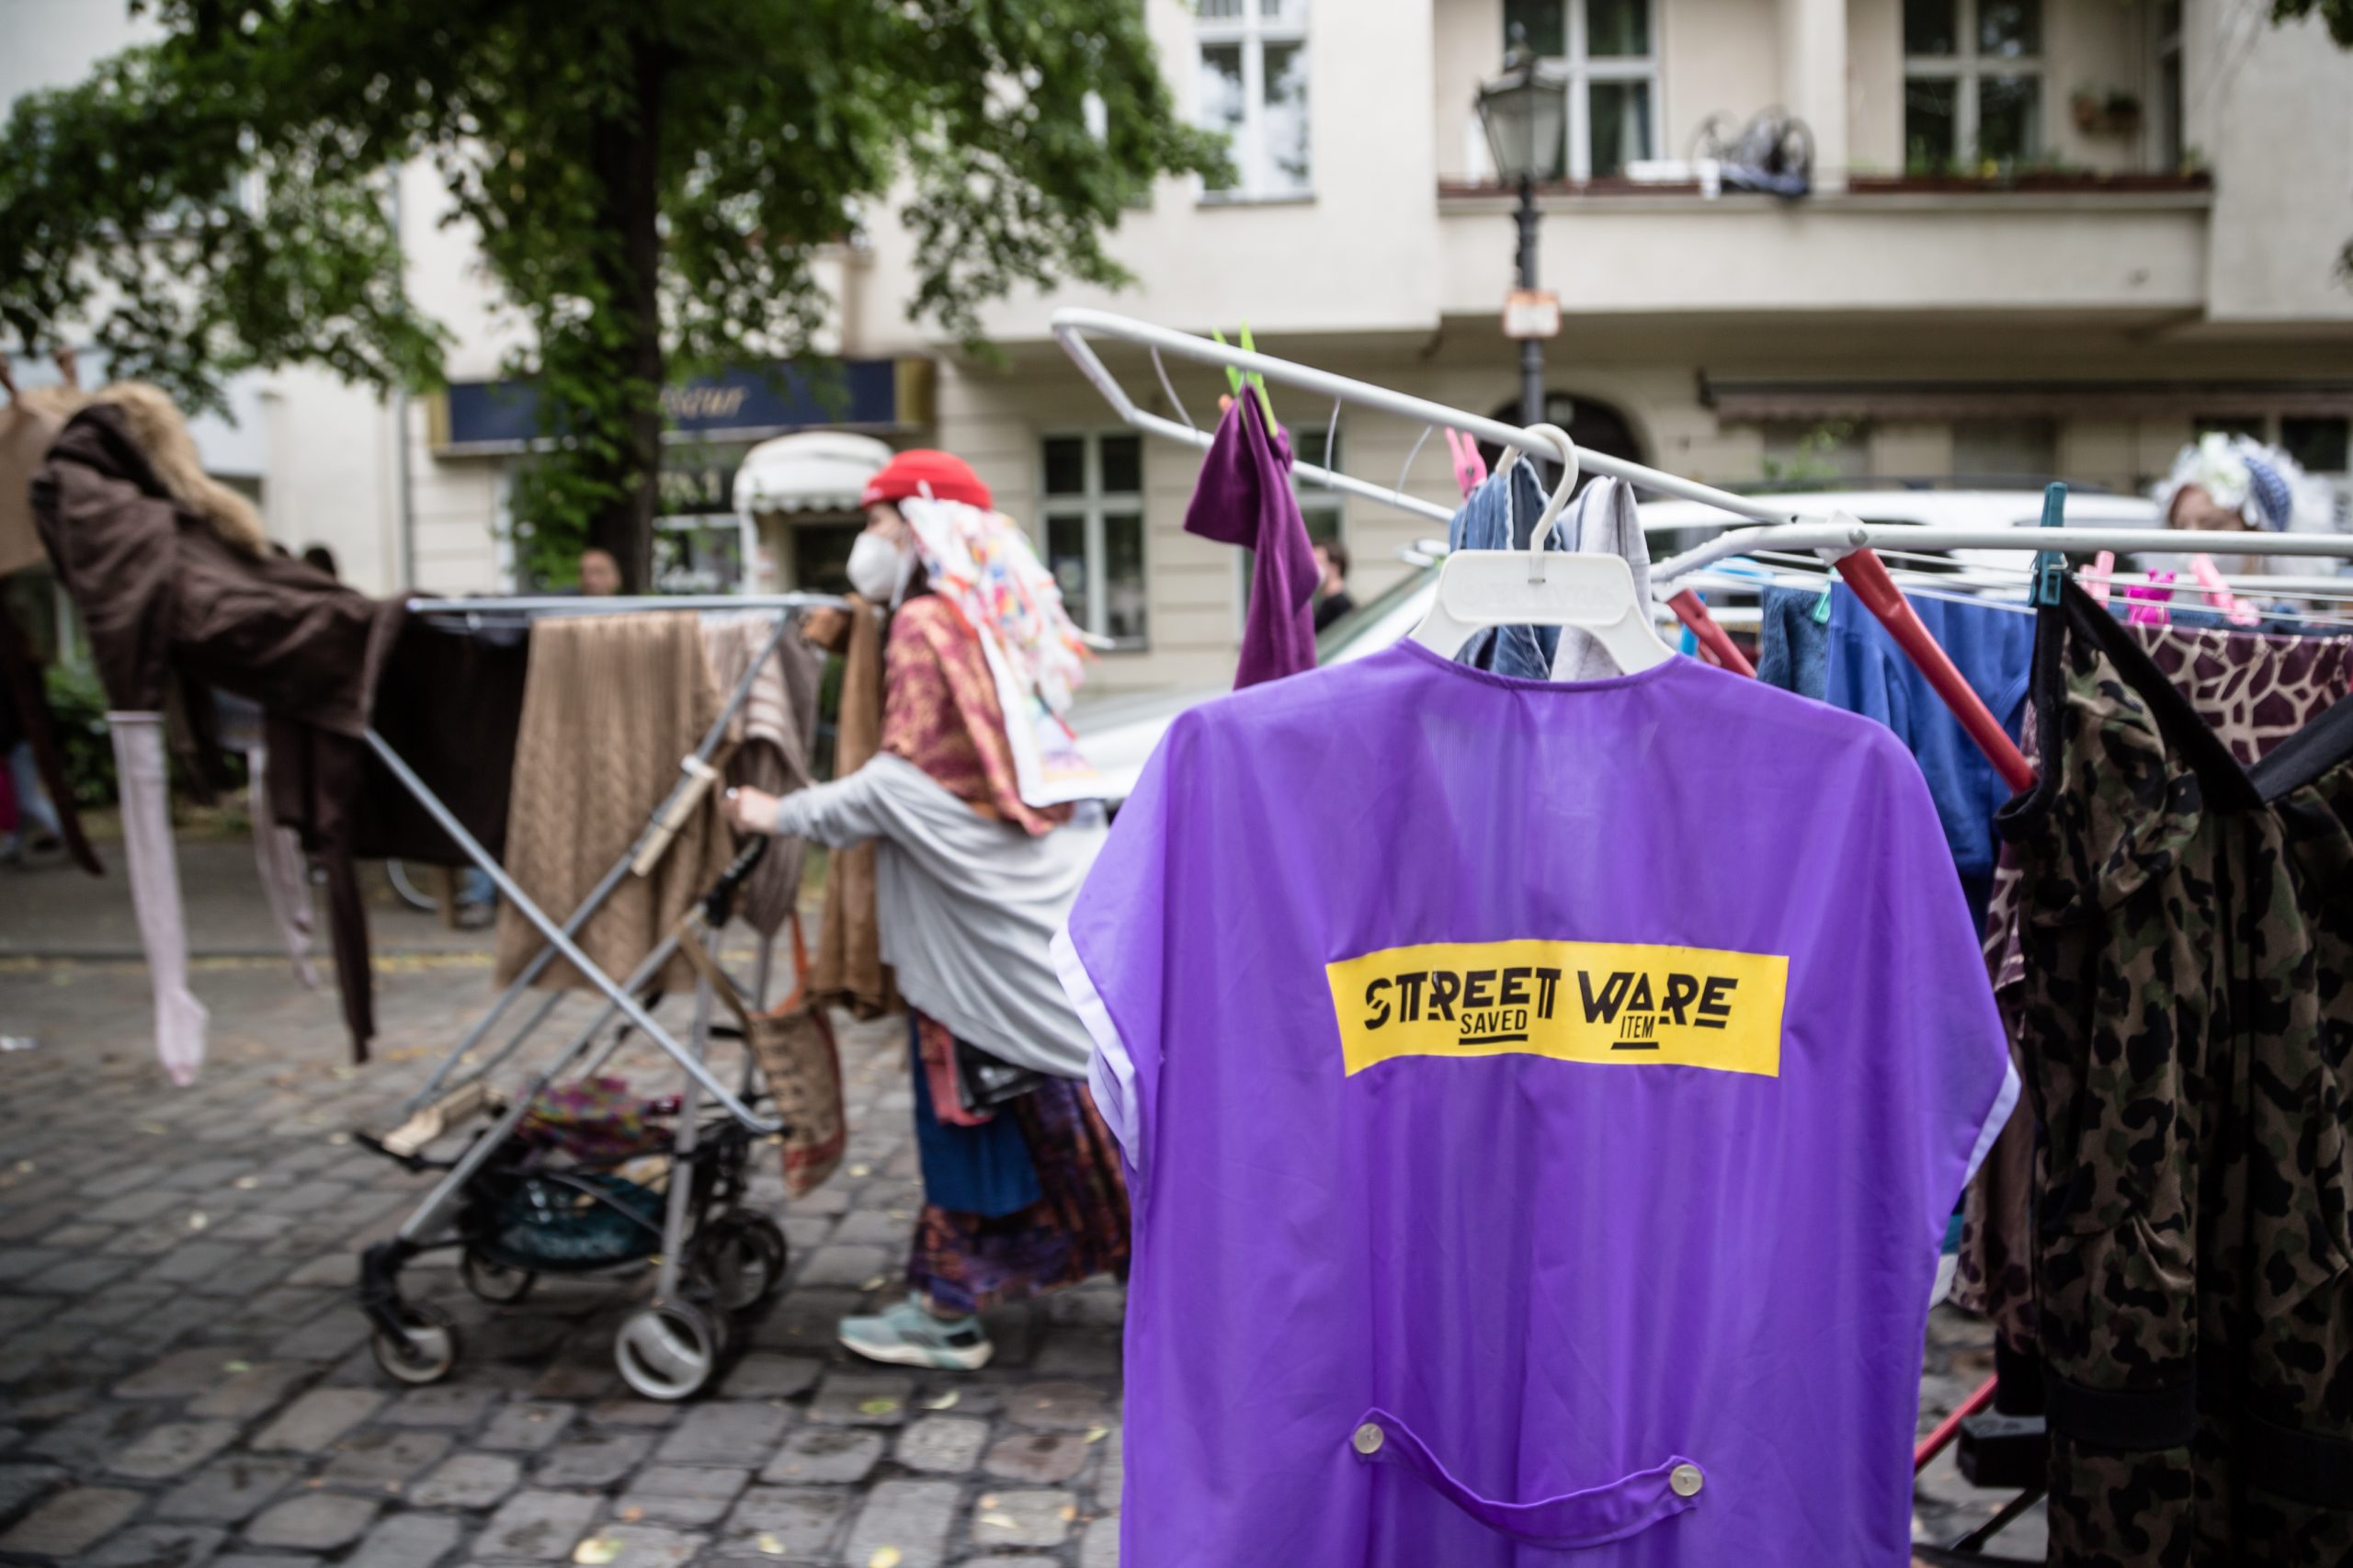 STREETWARE saved item - Karneval fuer die Zukunft